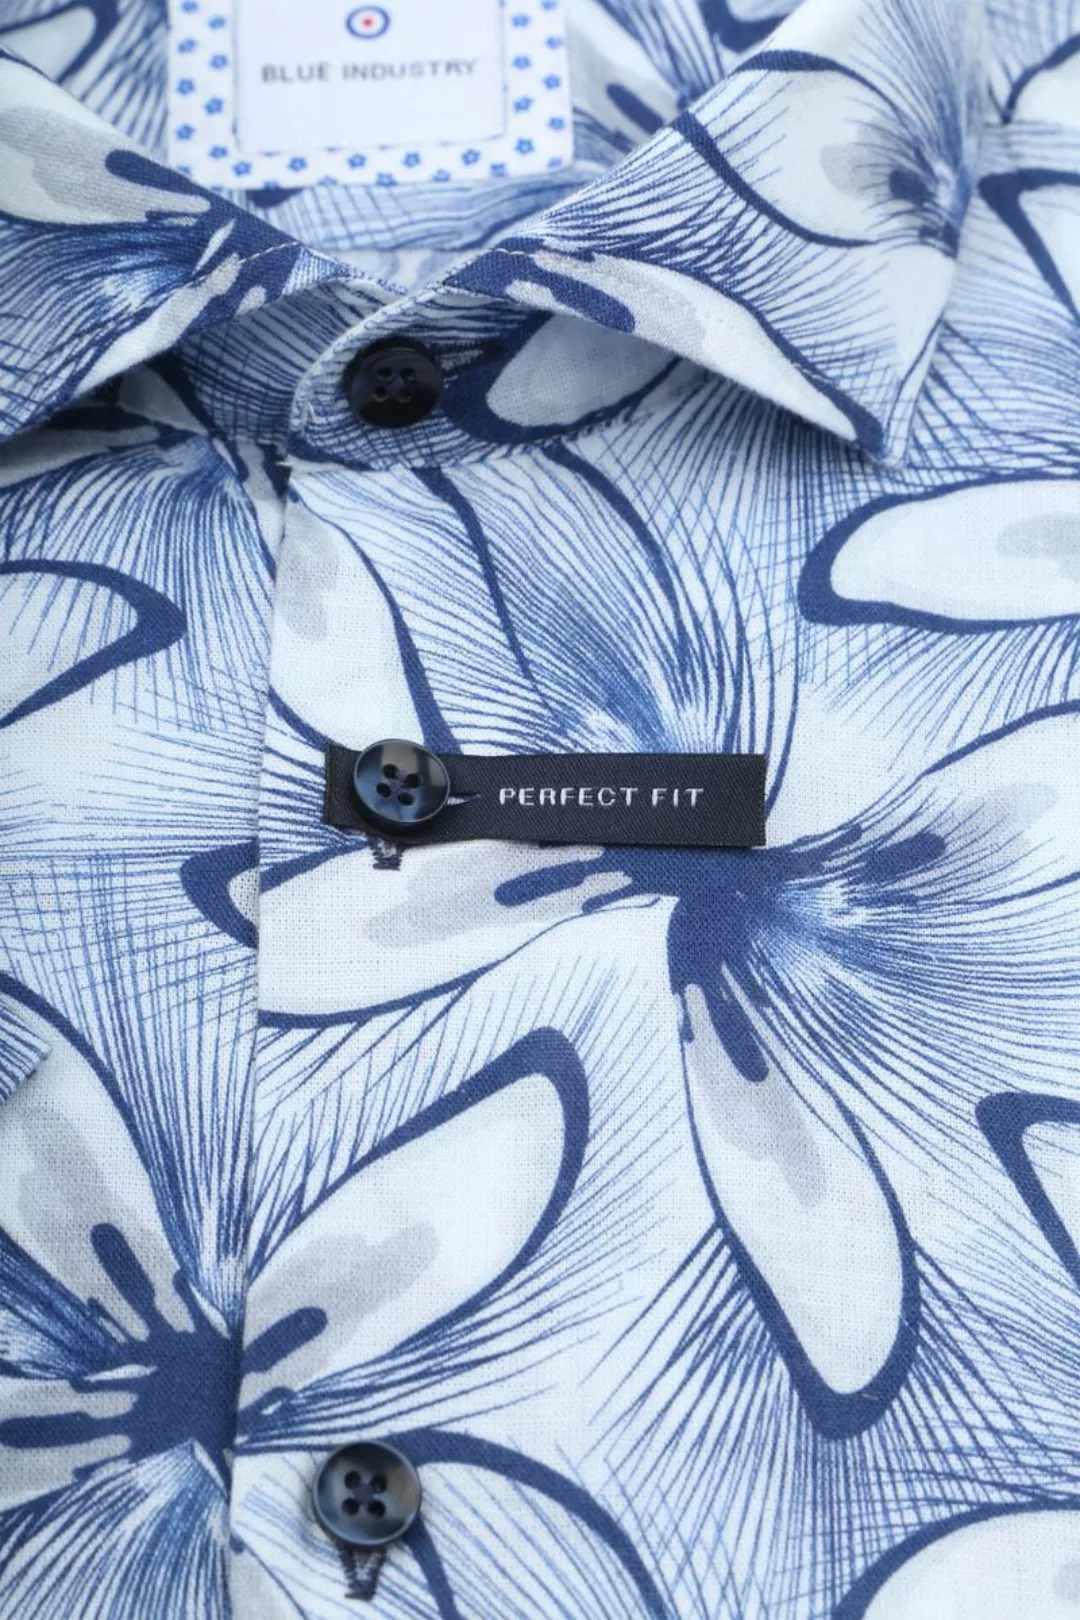 Blue Industry Short Sleeve Hemd Leinen Druck Blau - Größe 38 günstig online kaufen